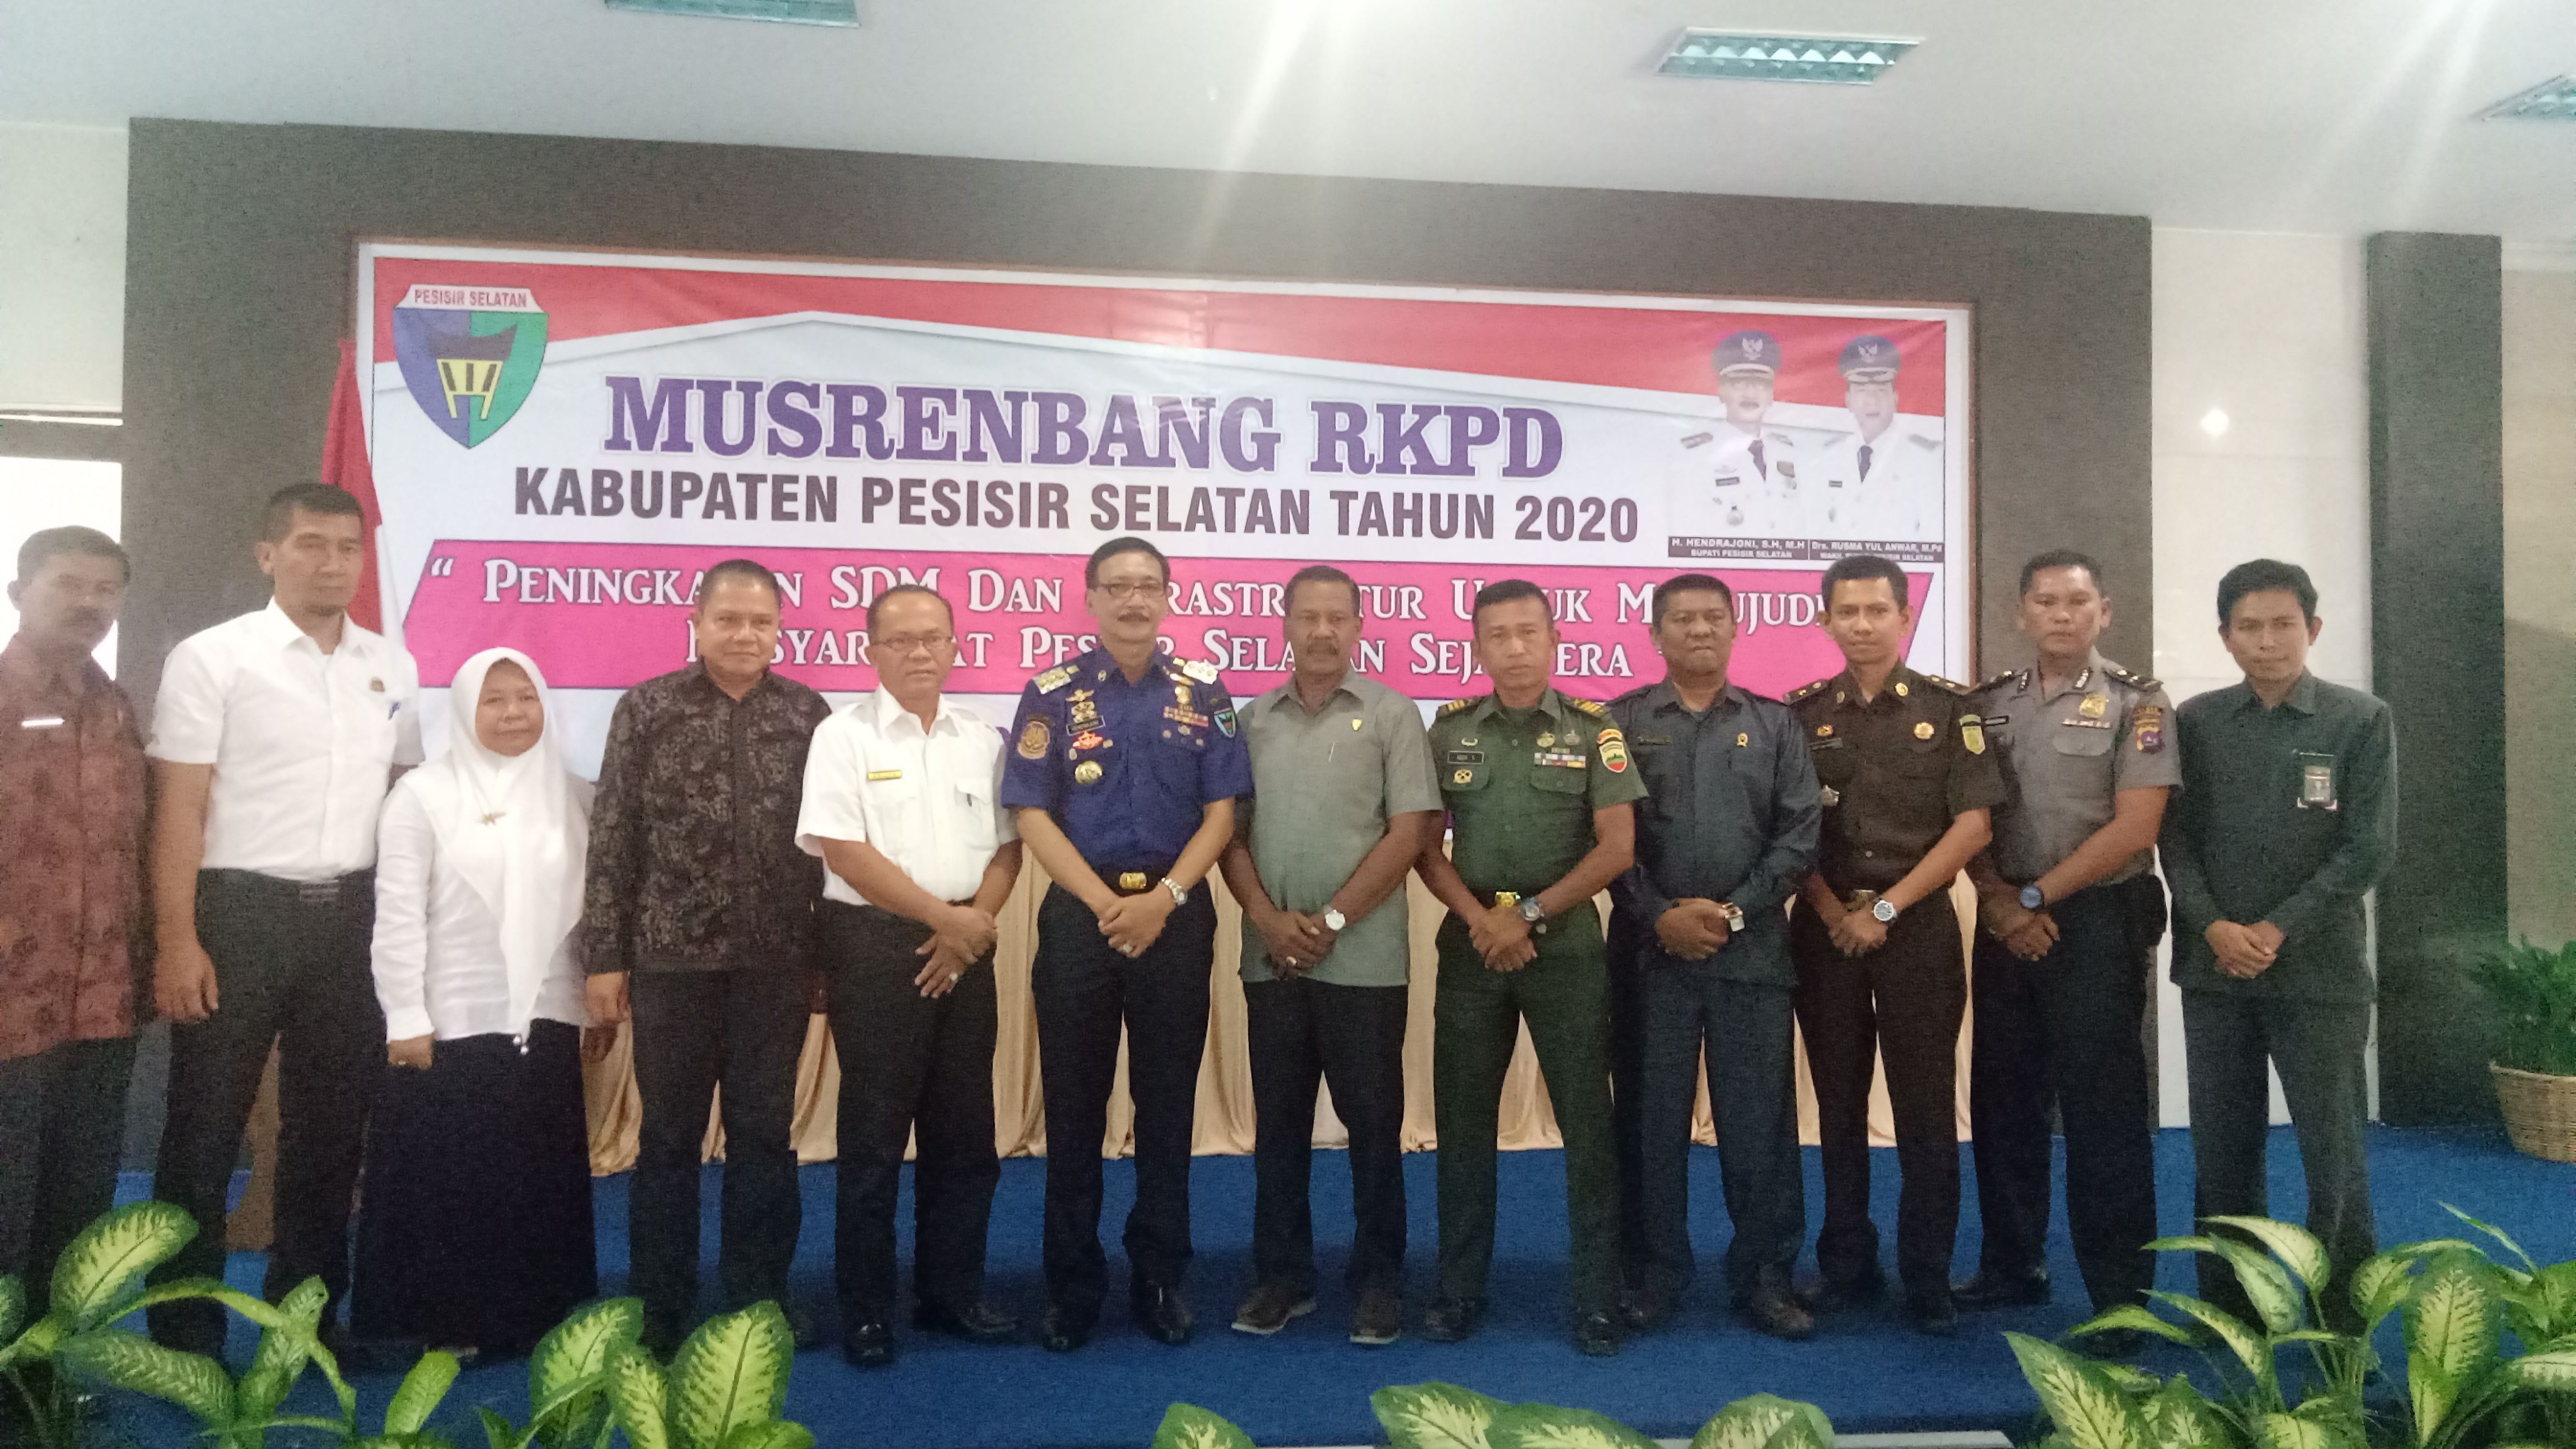 Musrenbang RKPD 2020, Bupati Hendrajoni: Pembangunan Harus Jelas dan Terarah 